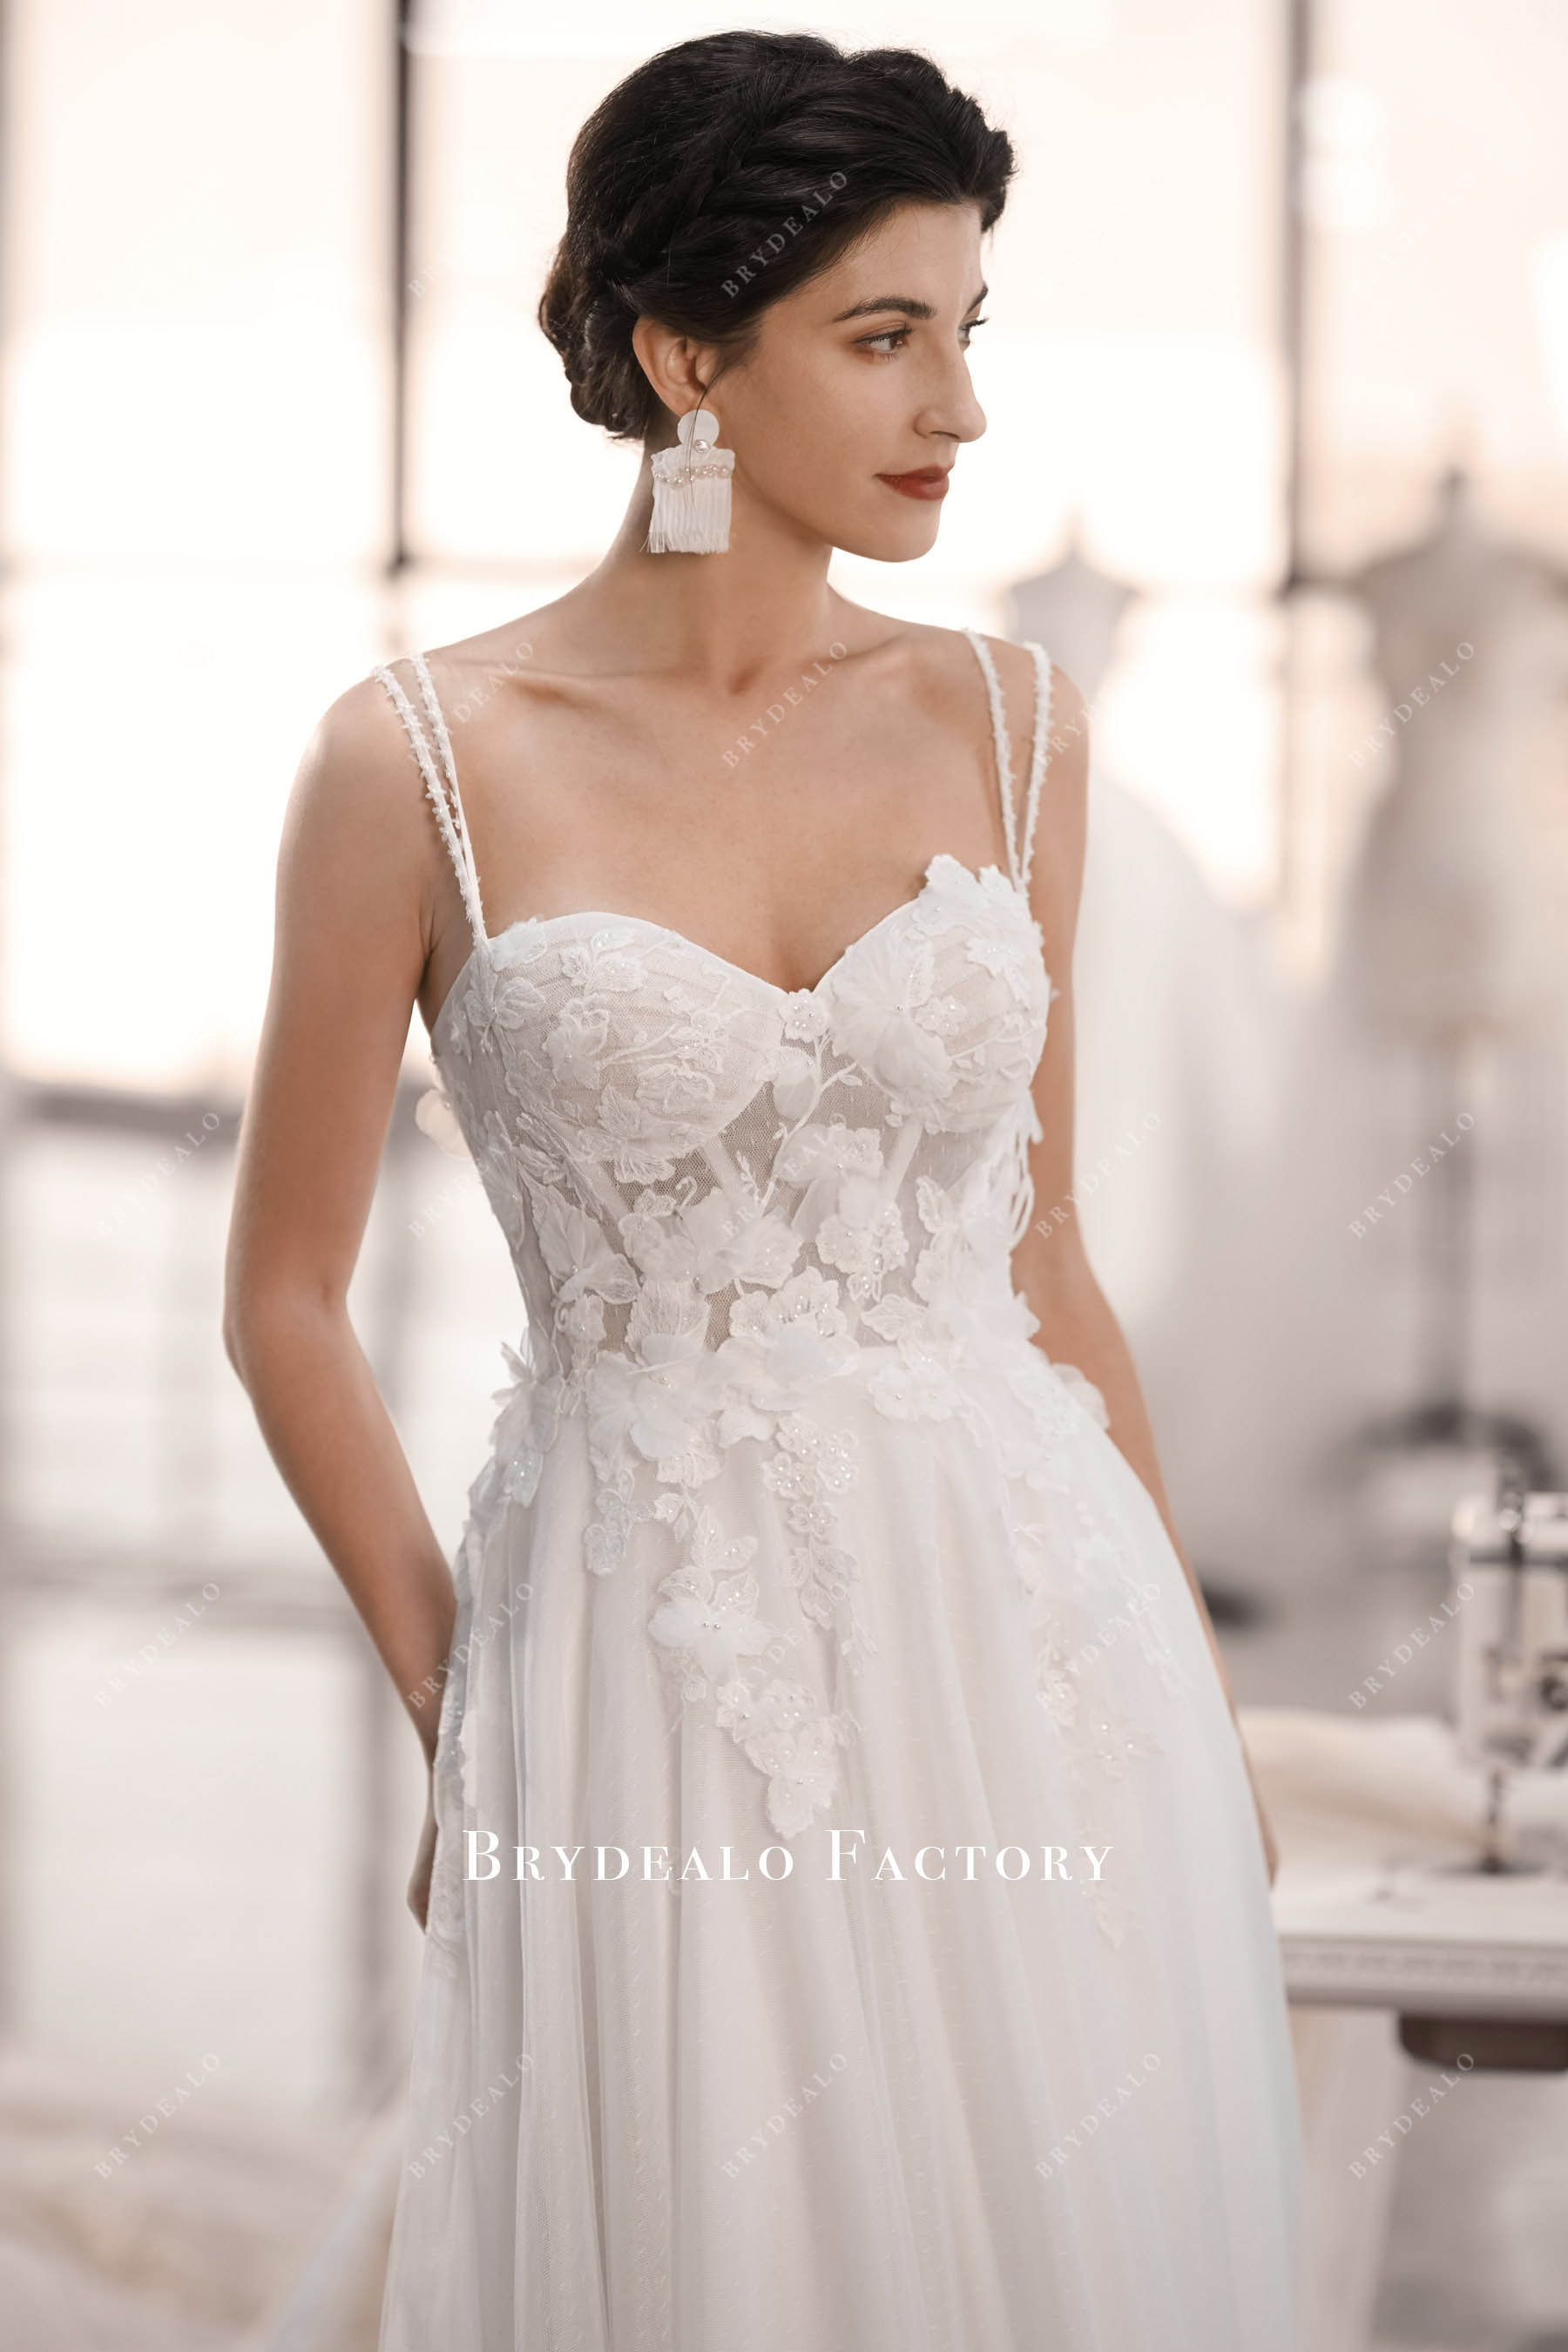 3D flower corset wedding dress